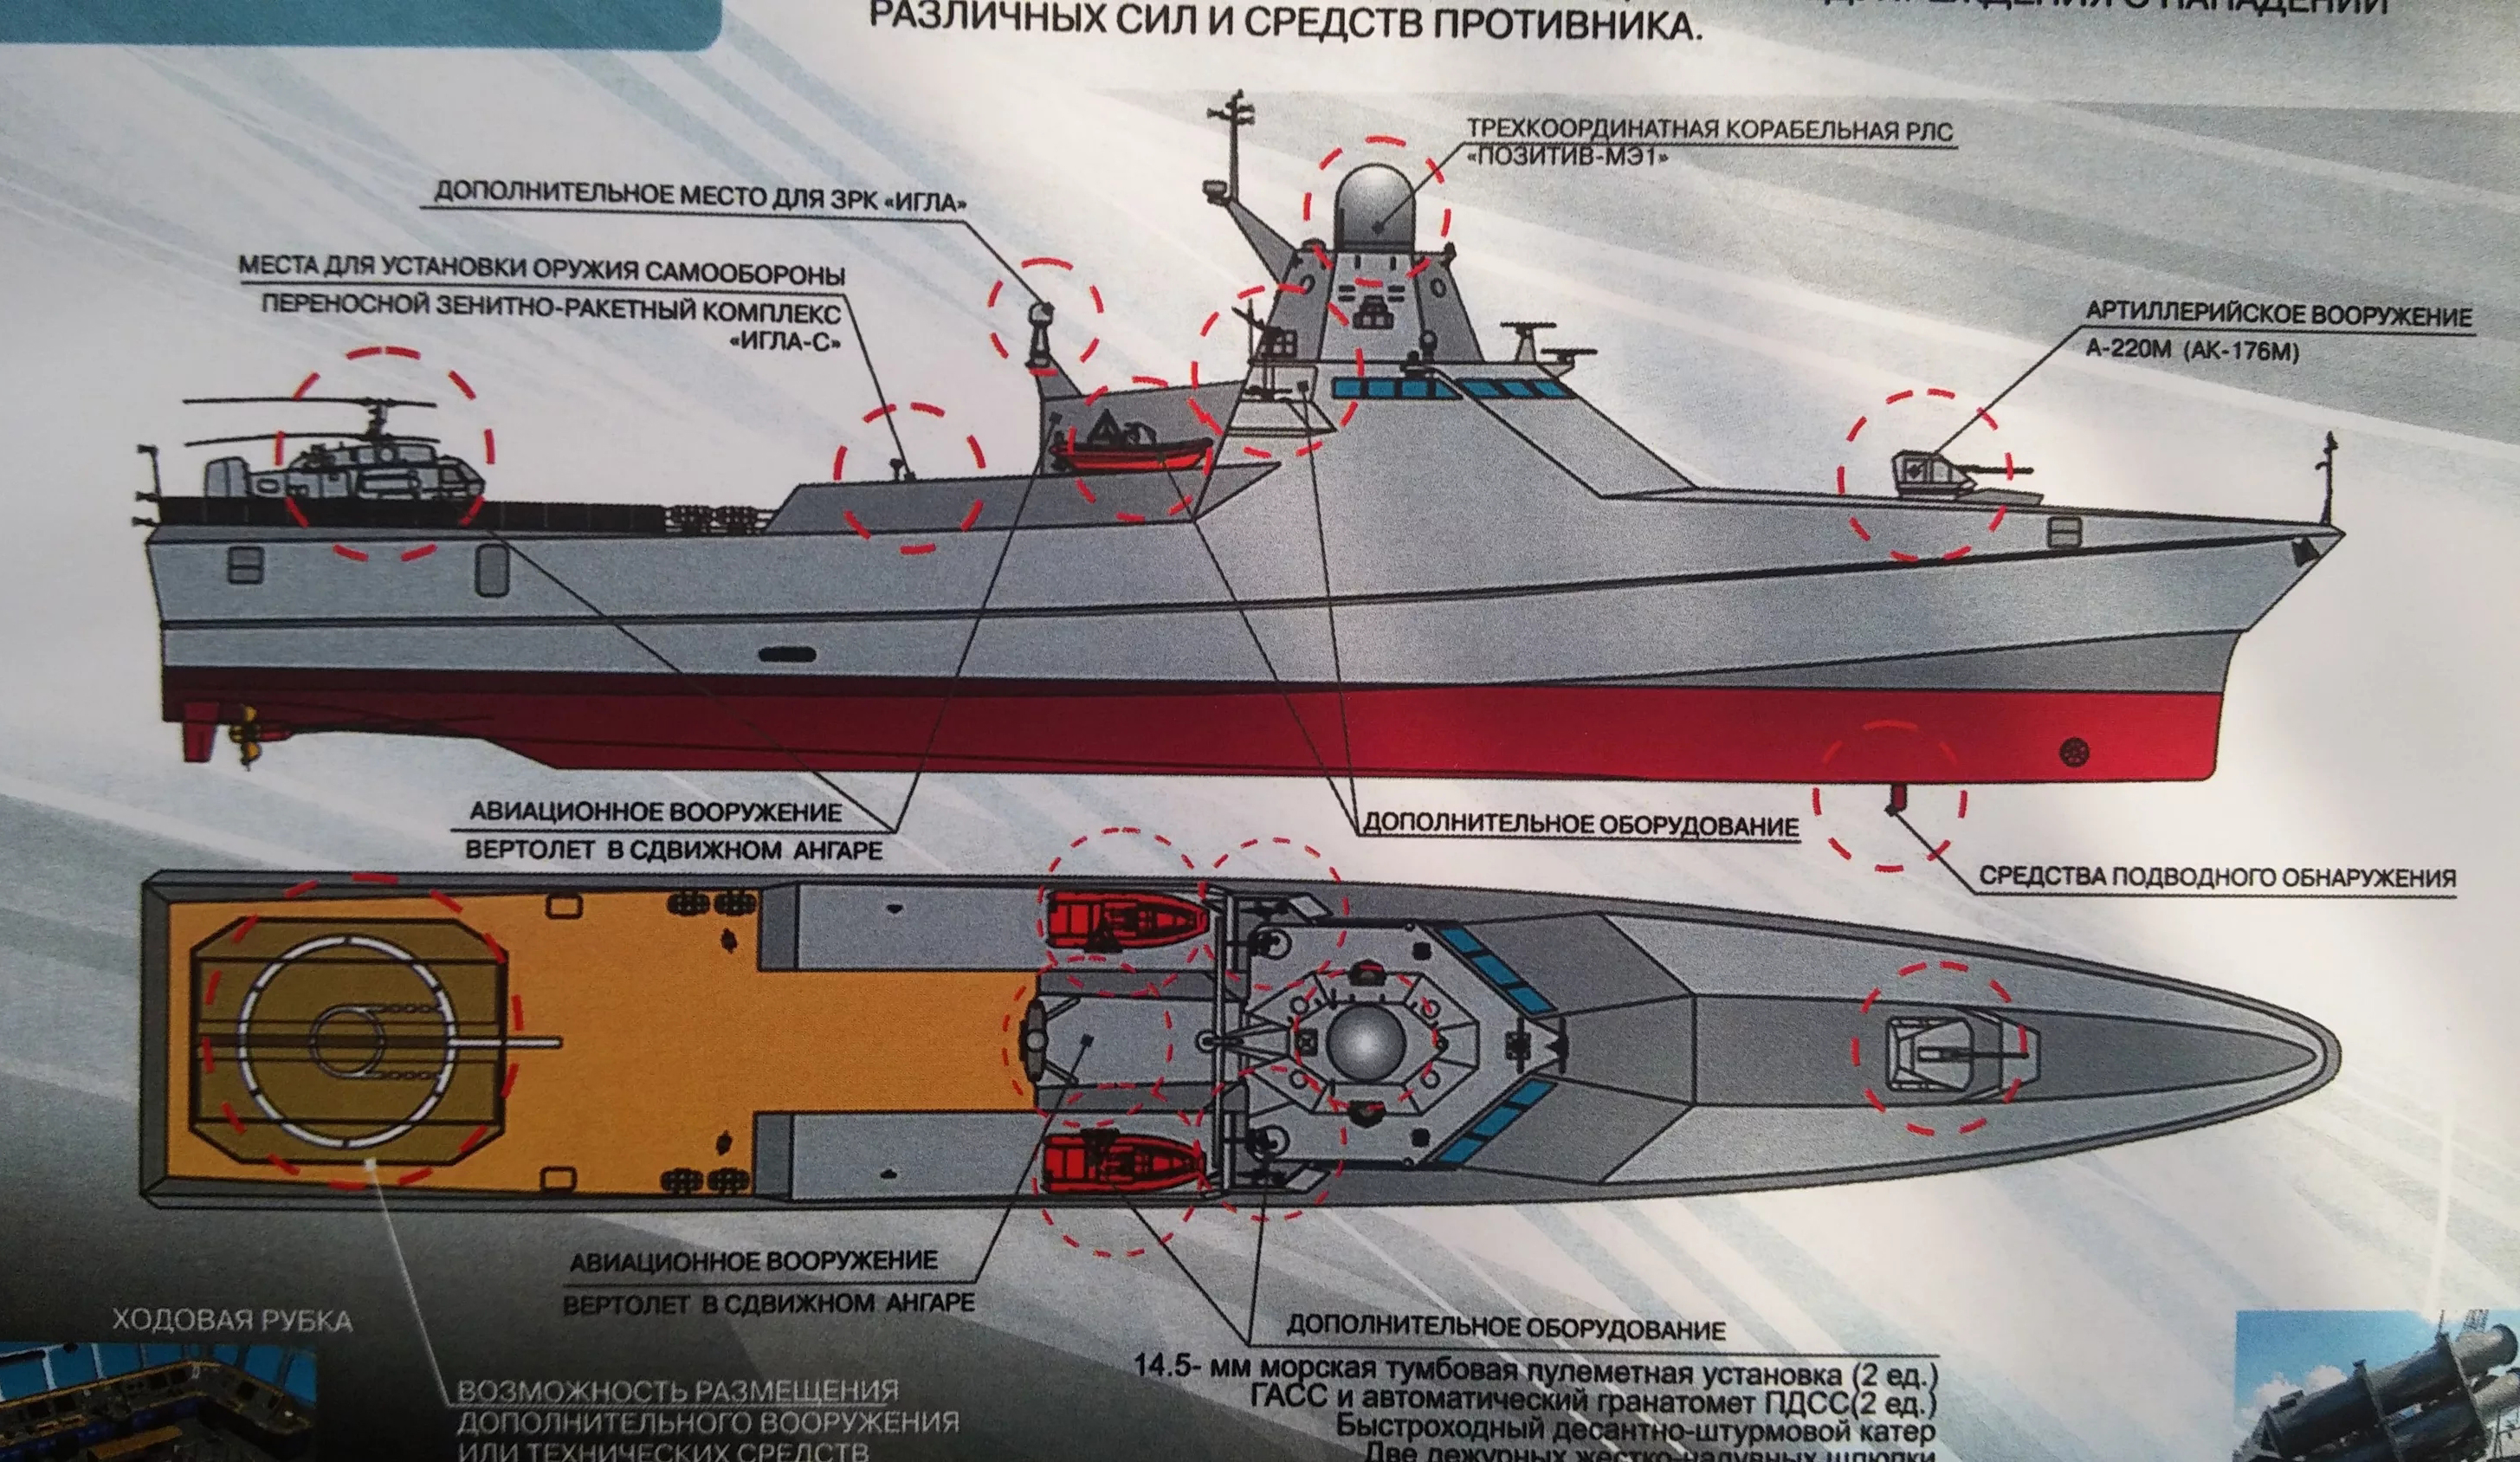 22160型巡逻舰配置示意图,火炮部分为a-220m或ak-176m选装